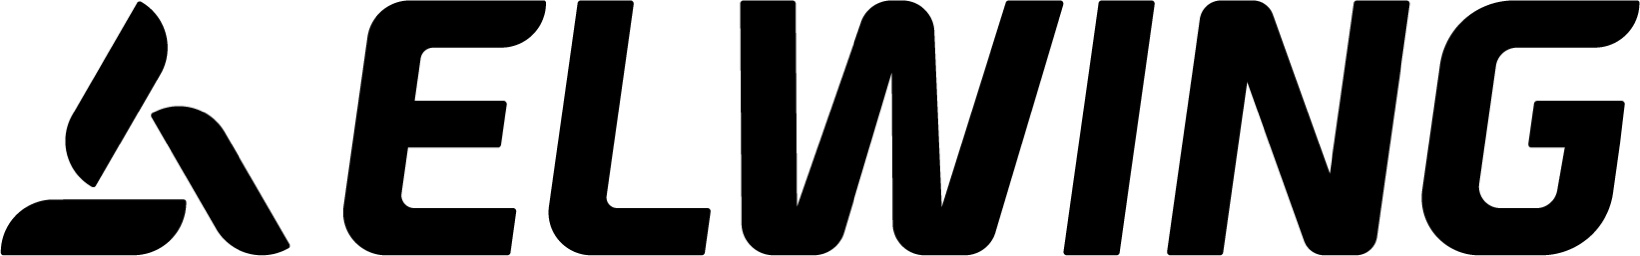 Elwing logo